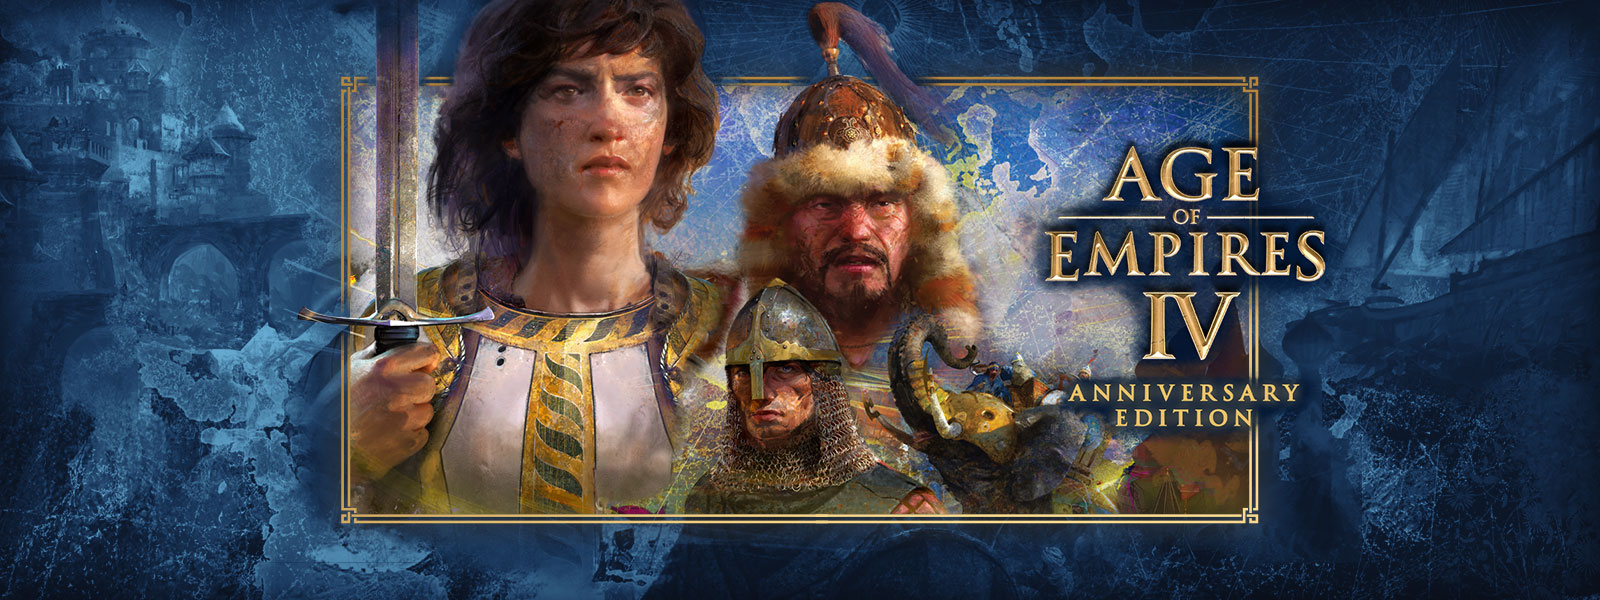 Age of Empires IV: Anniversary Edition. Три персонажа на фоне сцен войны и бронированных слонов вокруг них.